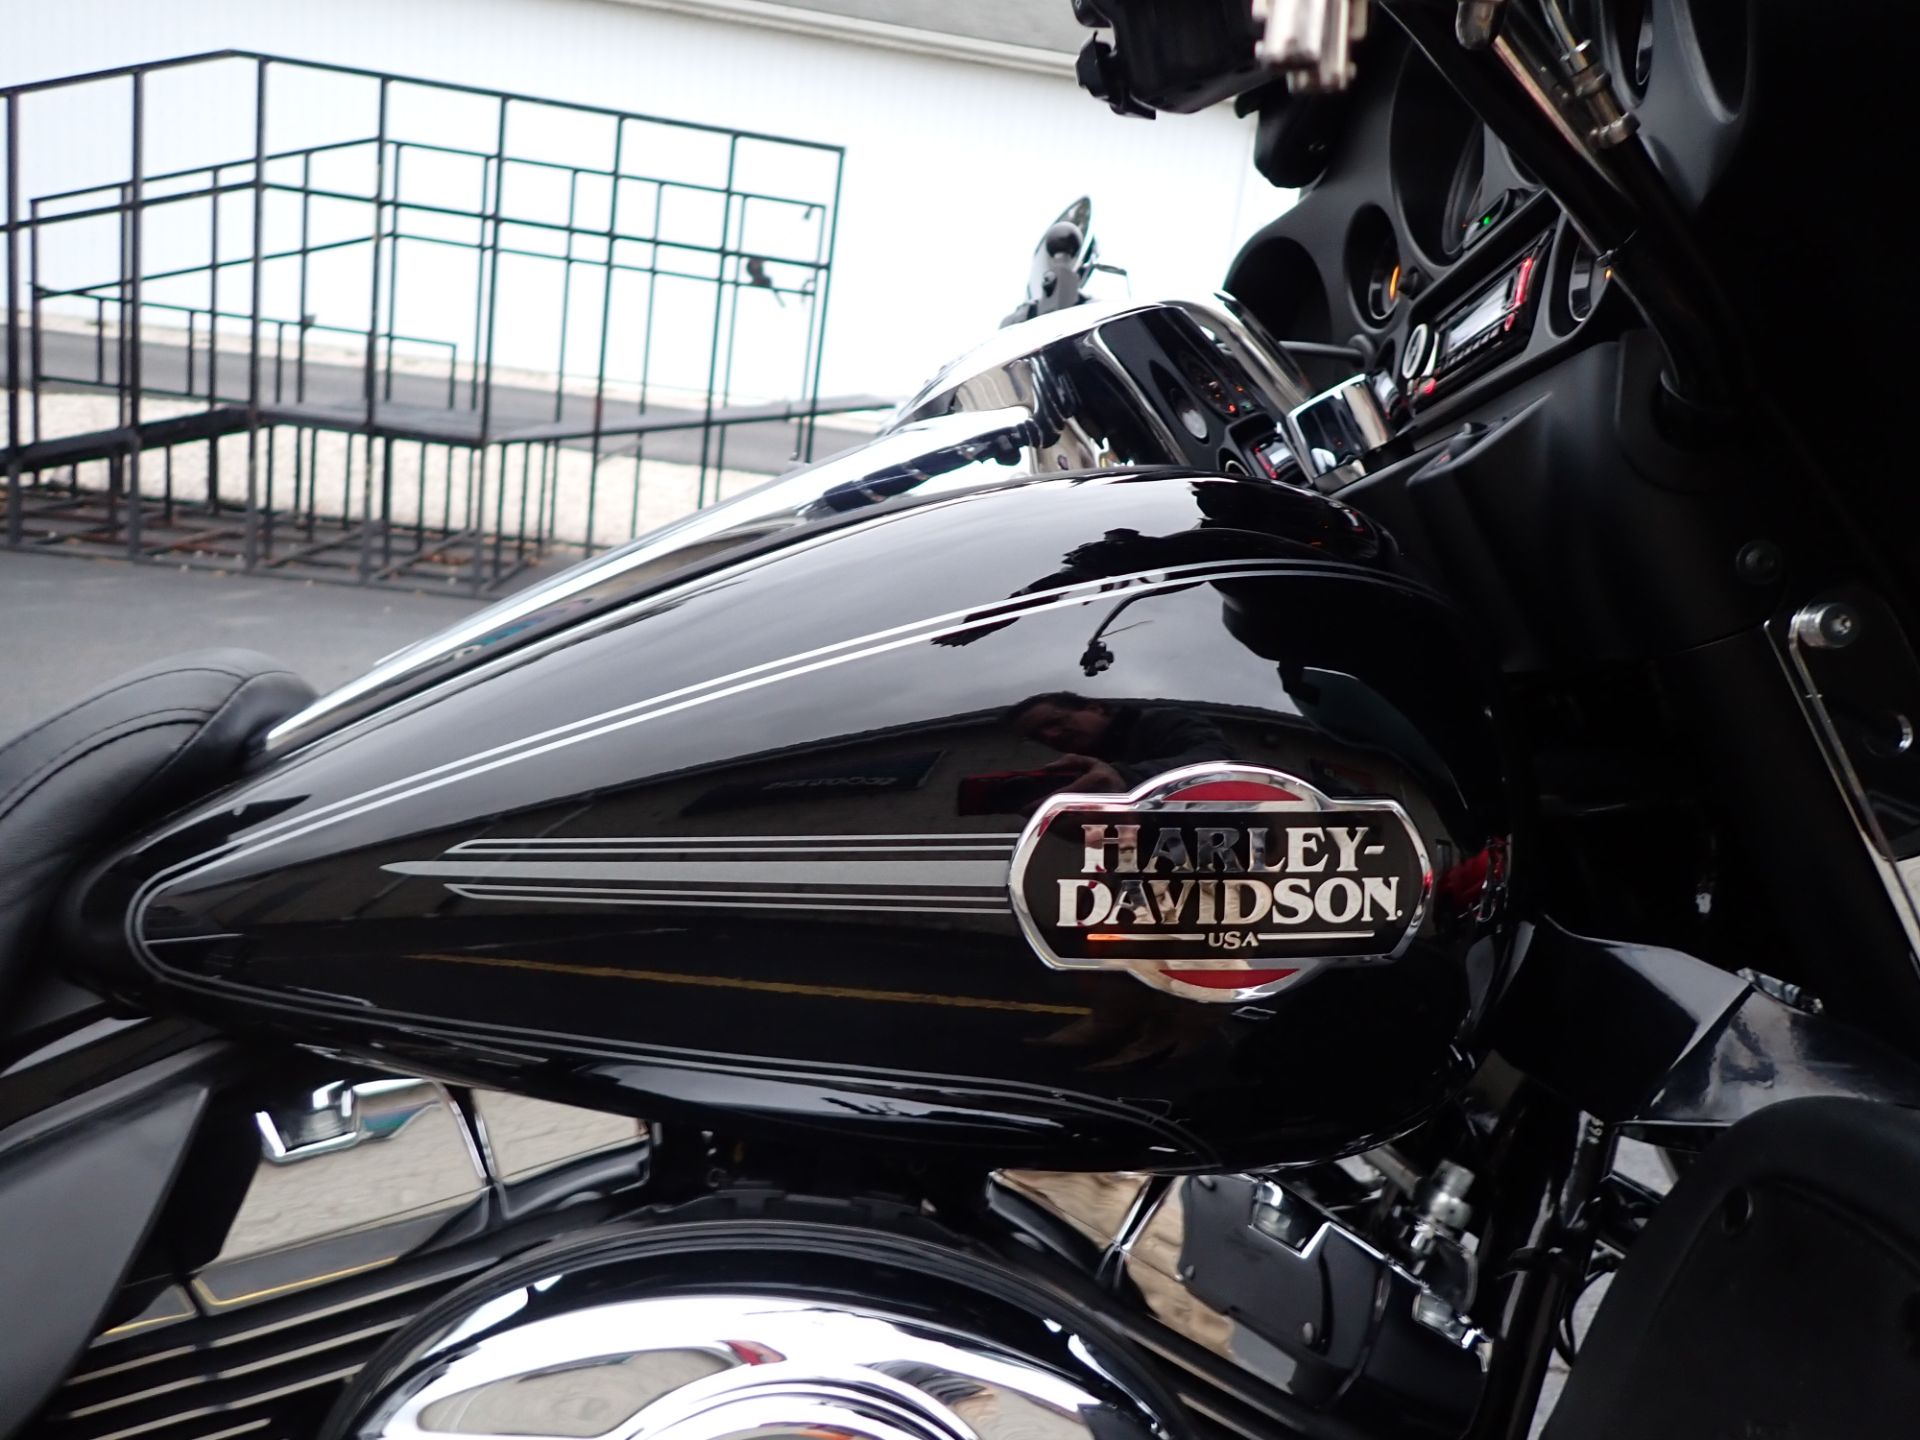 2013 Harley-Davidson Ultra Classic® Electra Glide® in Massillon, Ohio - Photo 3